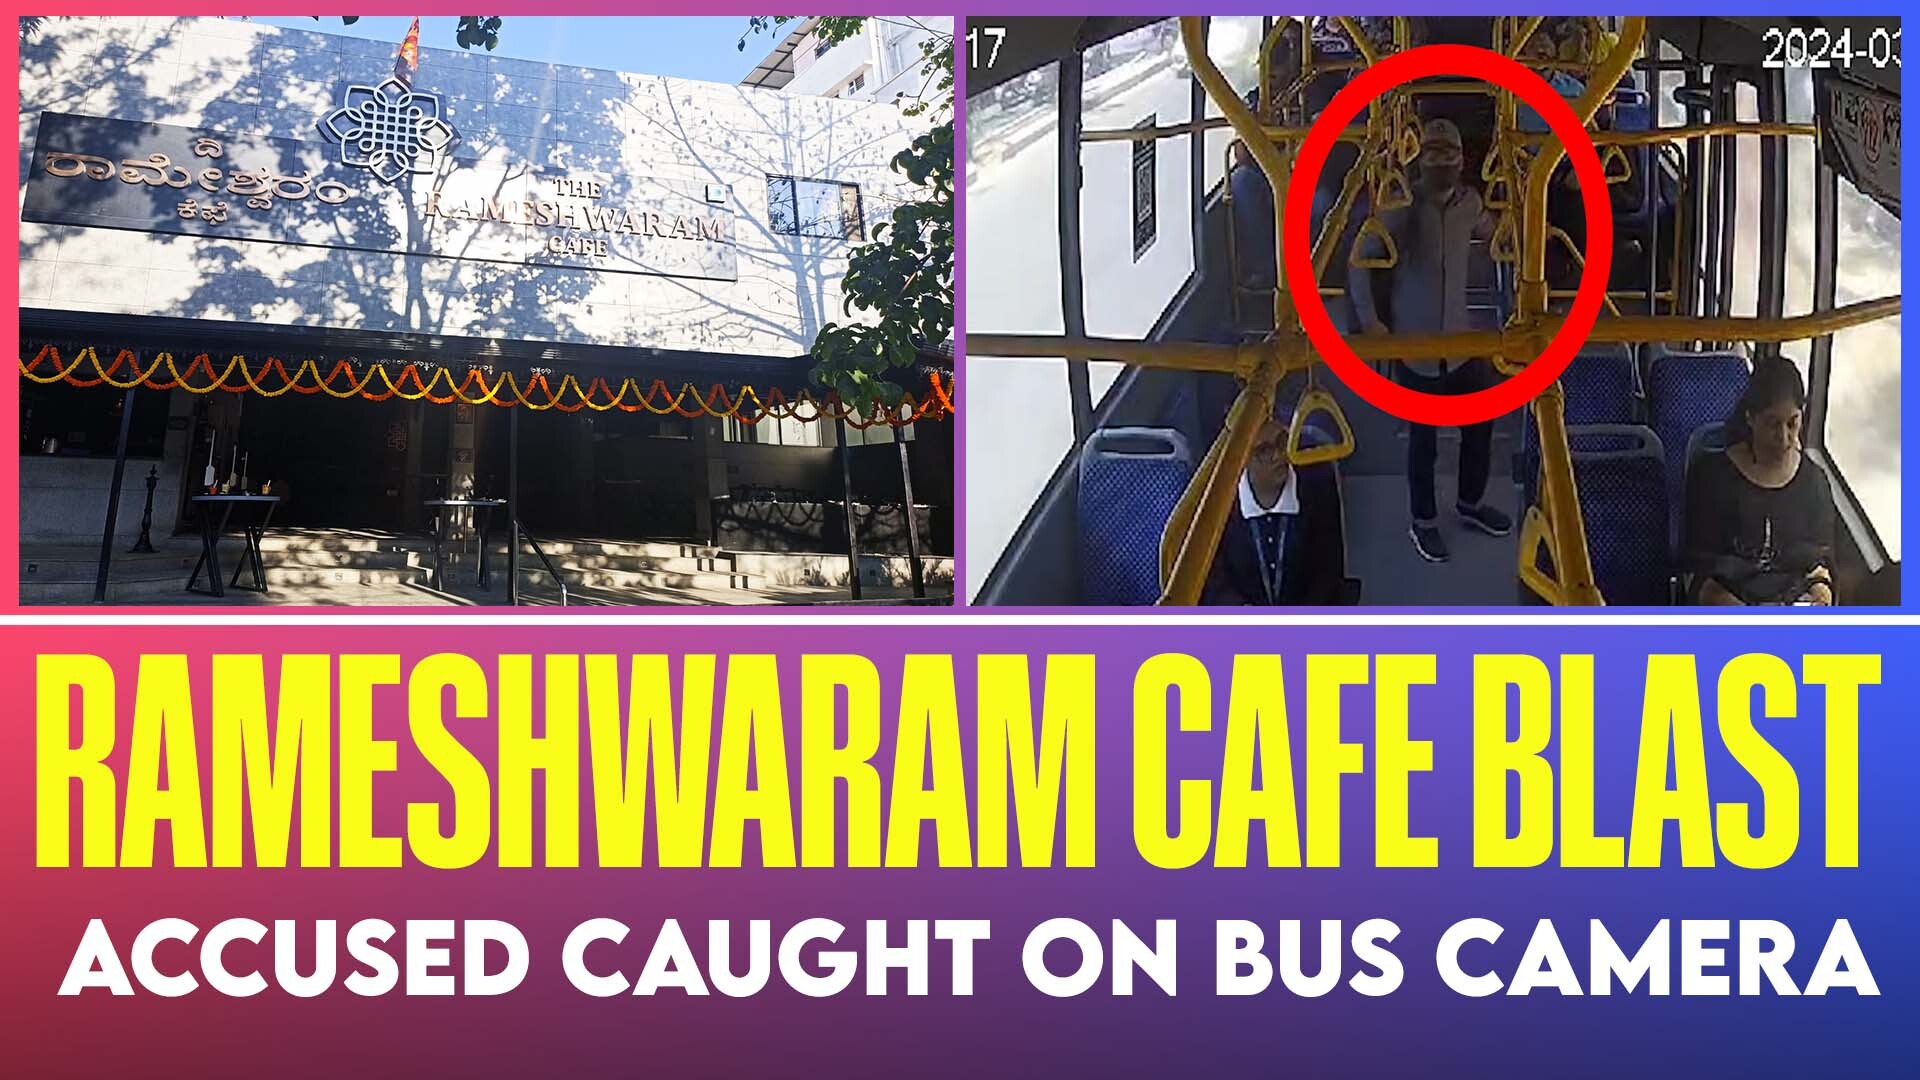 Rameshwaram Cafe blast accused